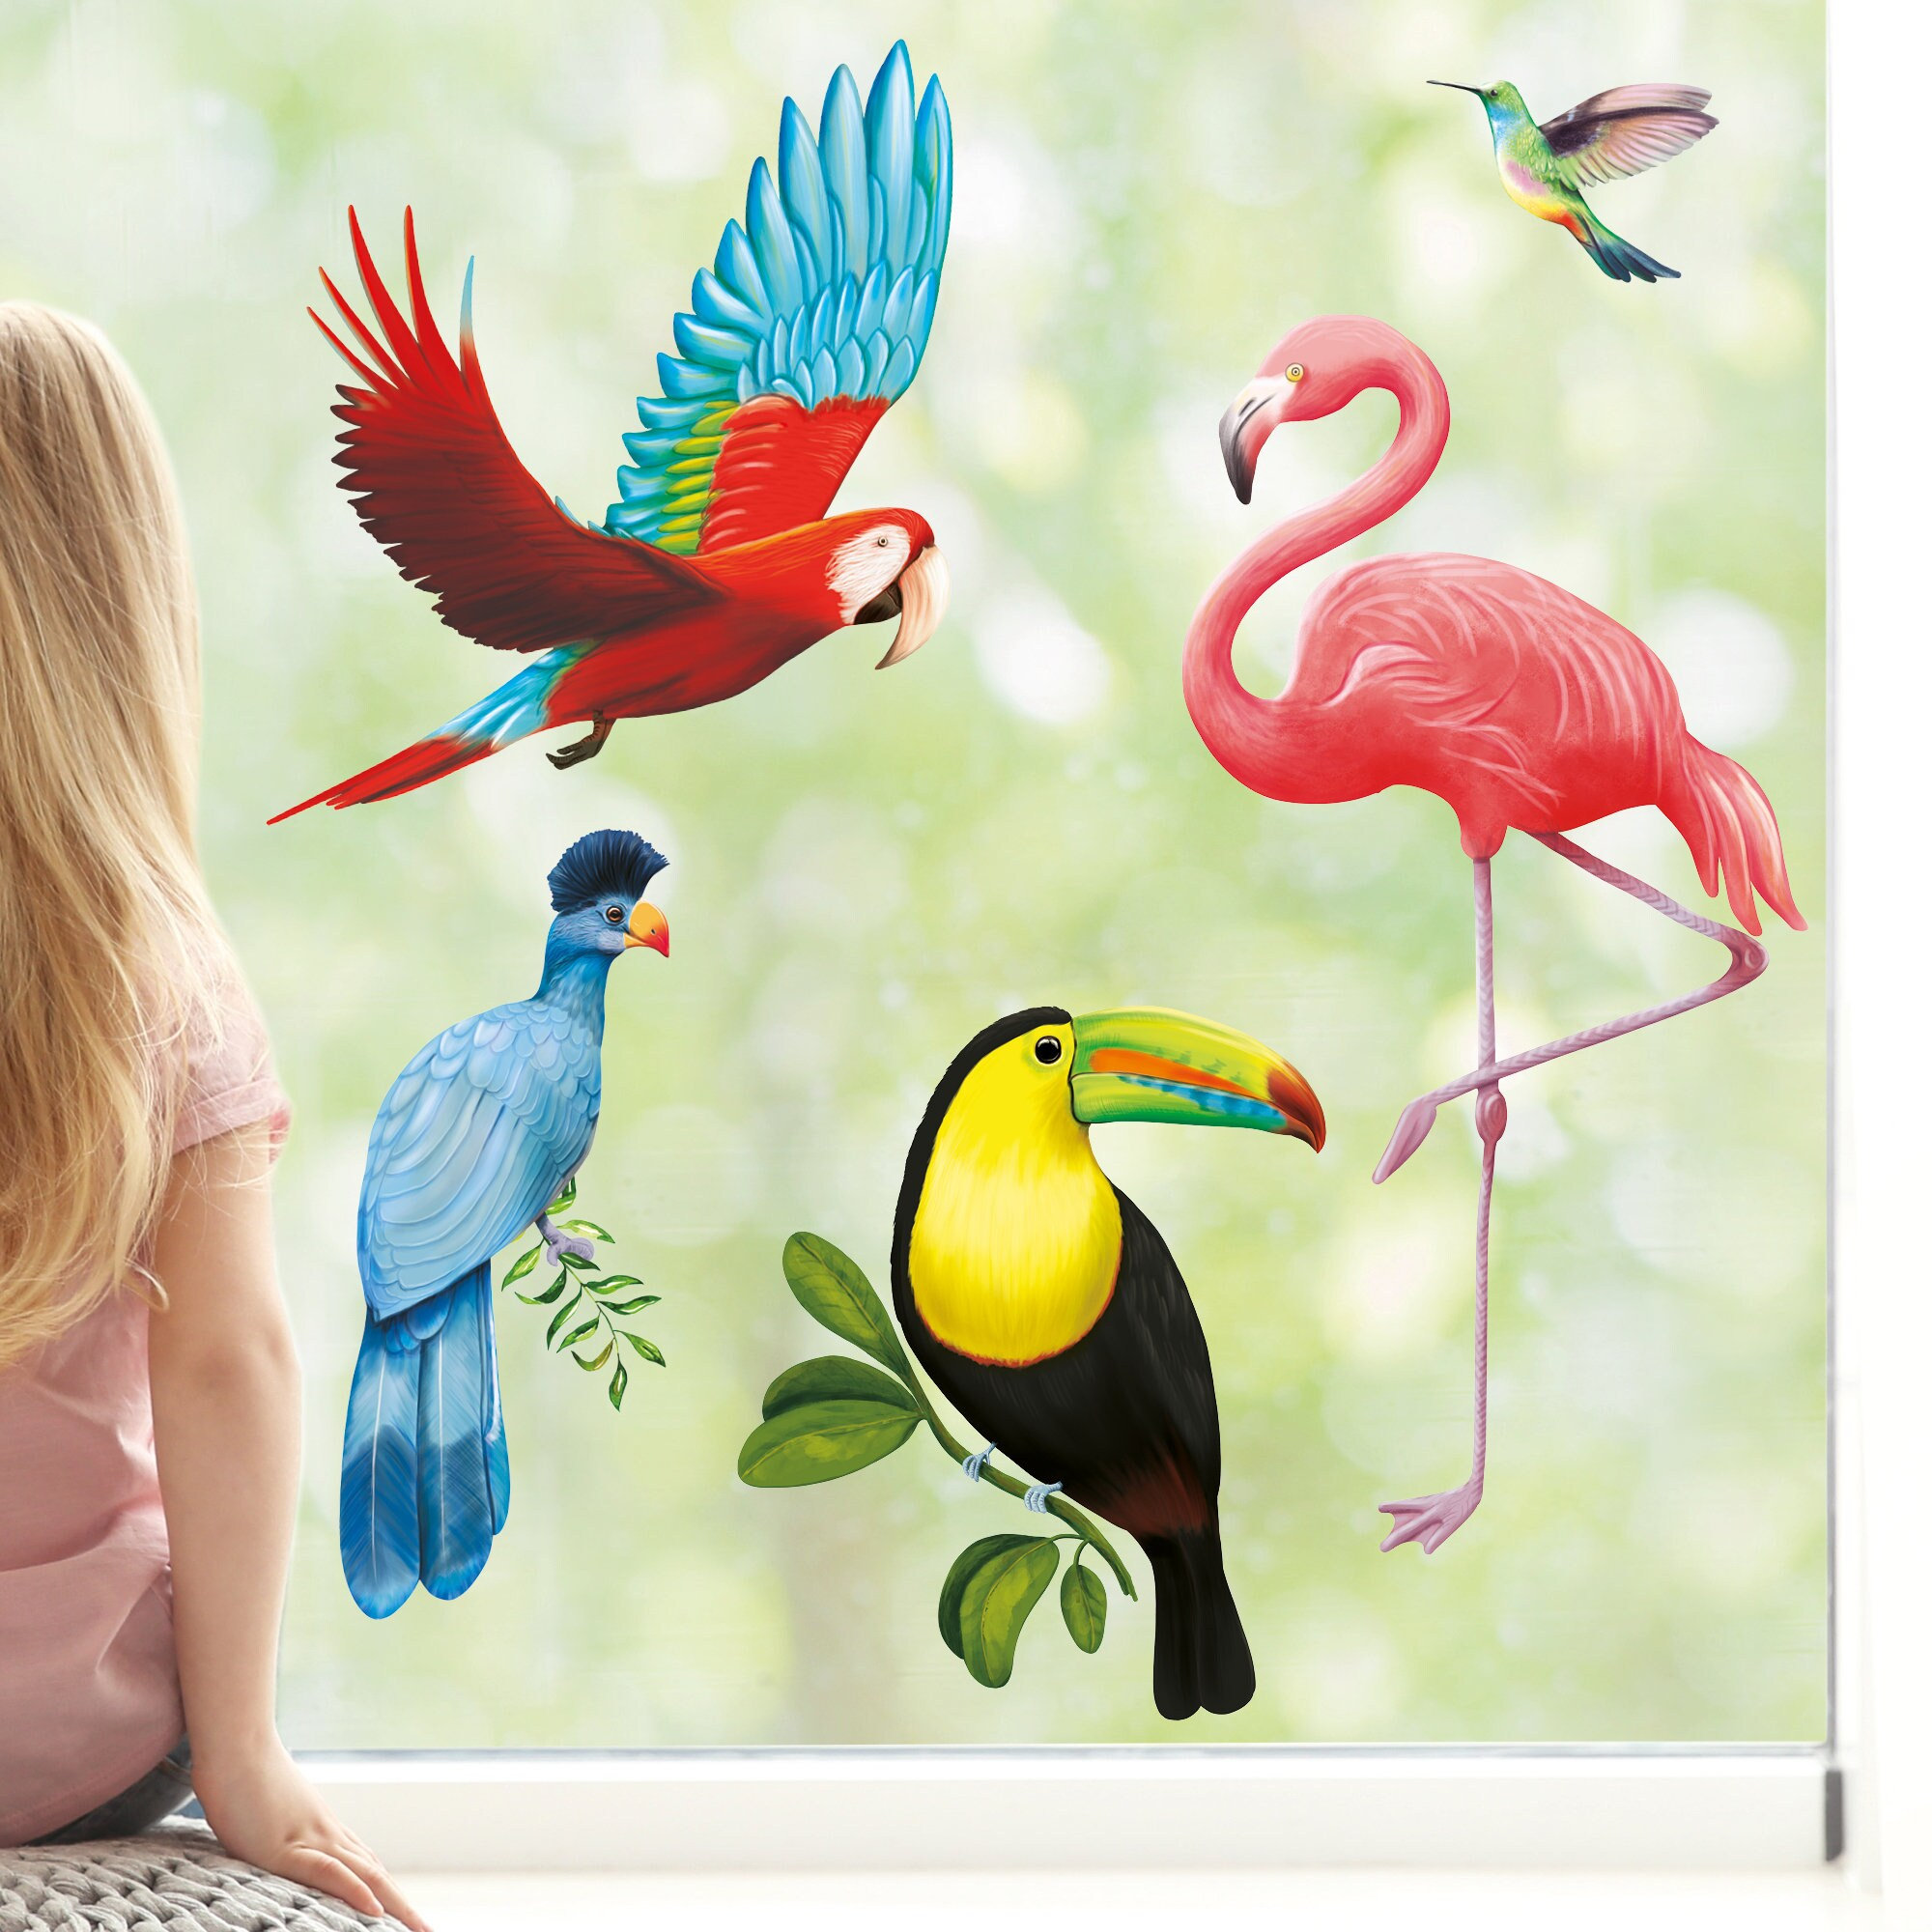 Wiederverwendbares Fensterbild Exotische Vögel Vogelset Fensteraufkleber Kinderzimmer Baby Kind, Frühlingsdeko,Sommer, Papagei, Flamingo